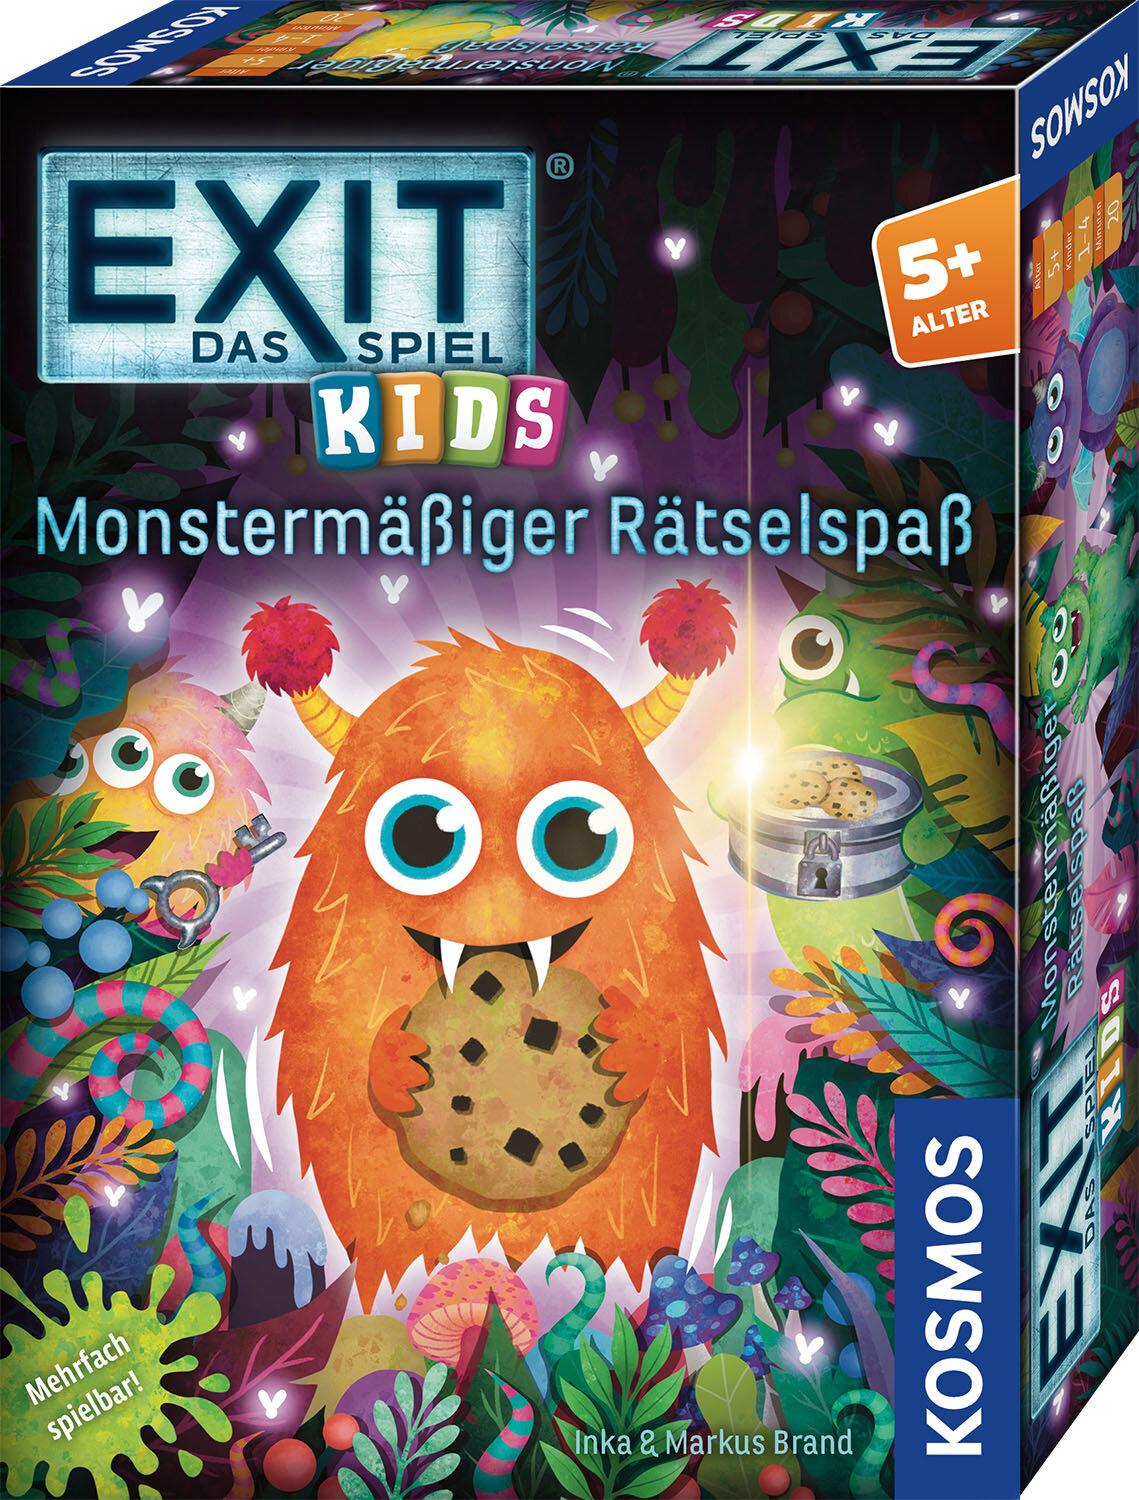 Exit: Das Spiel Kids - Monstermässiger Rätselspaß